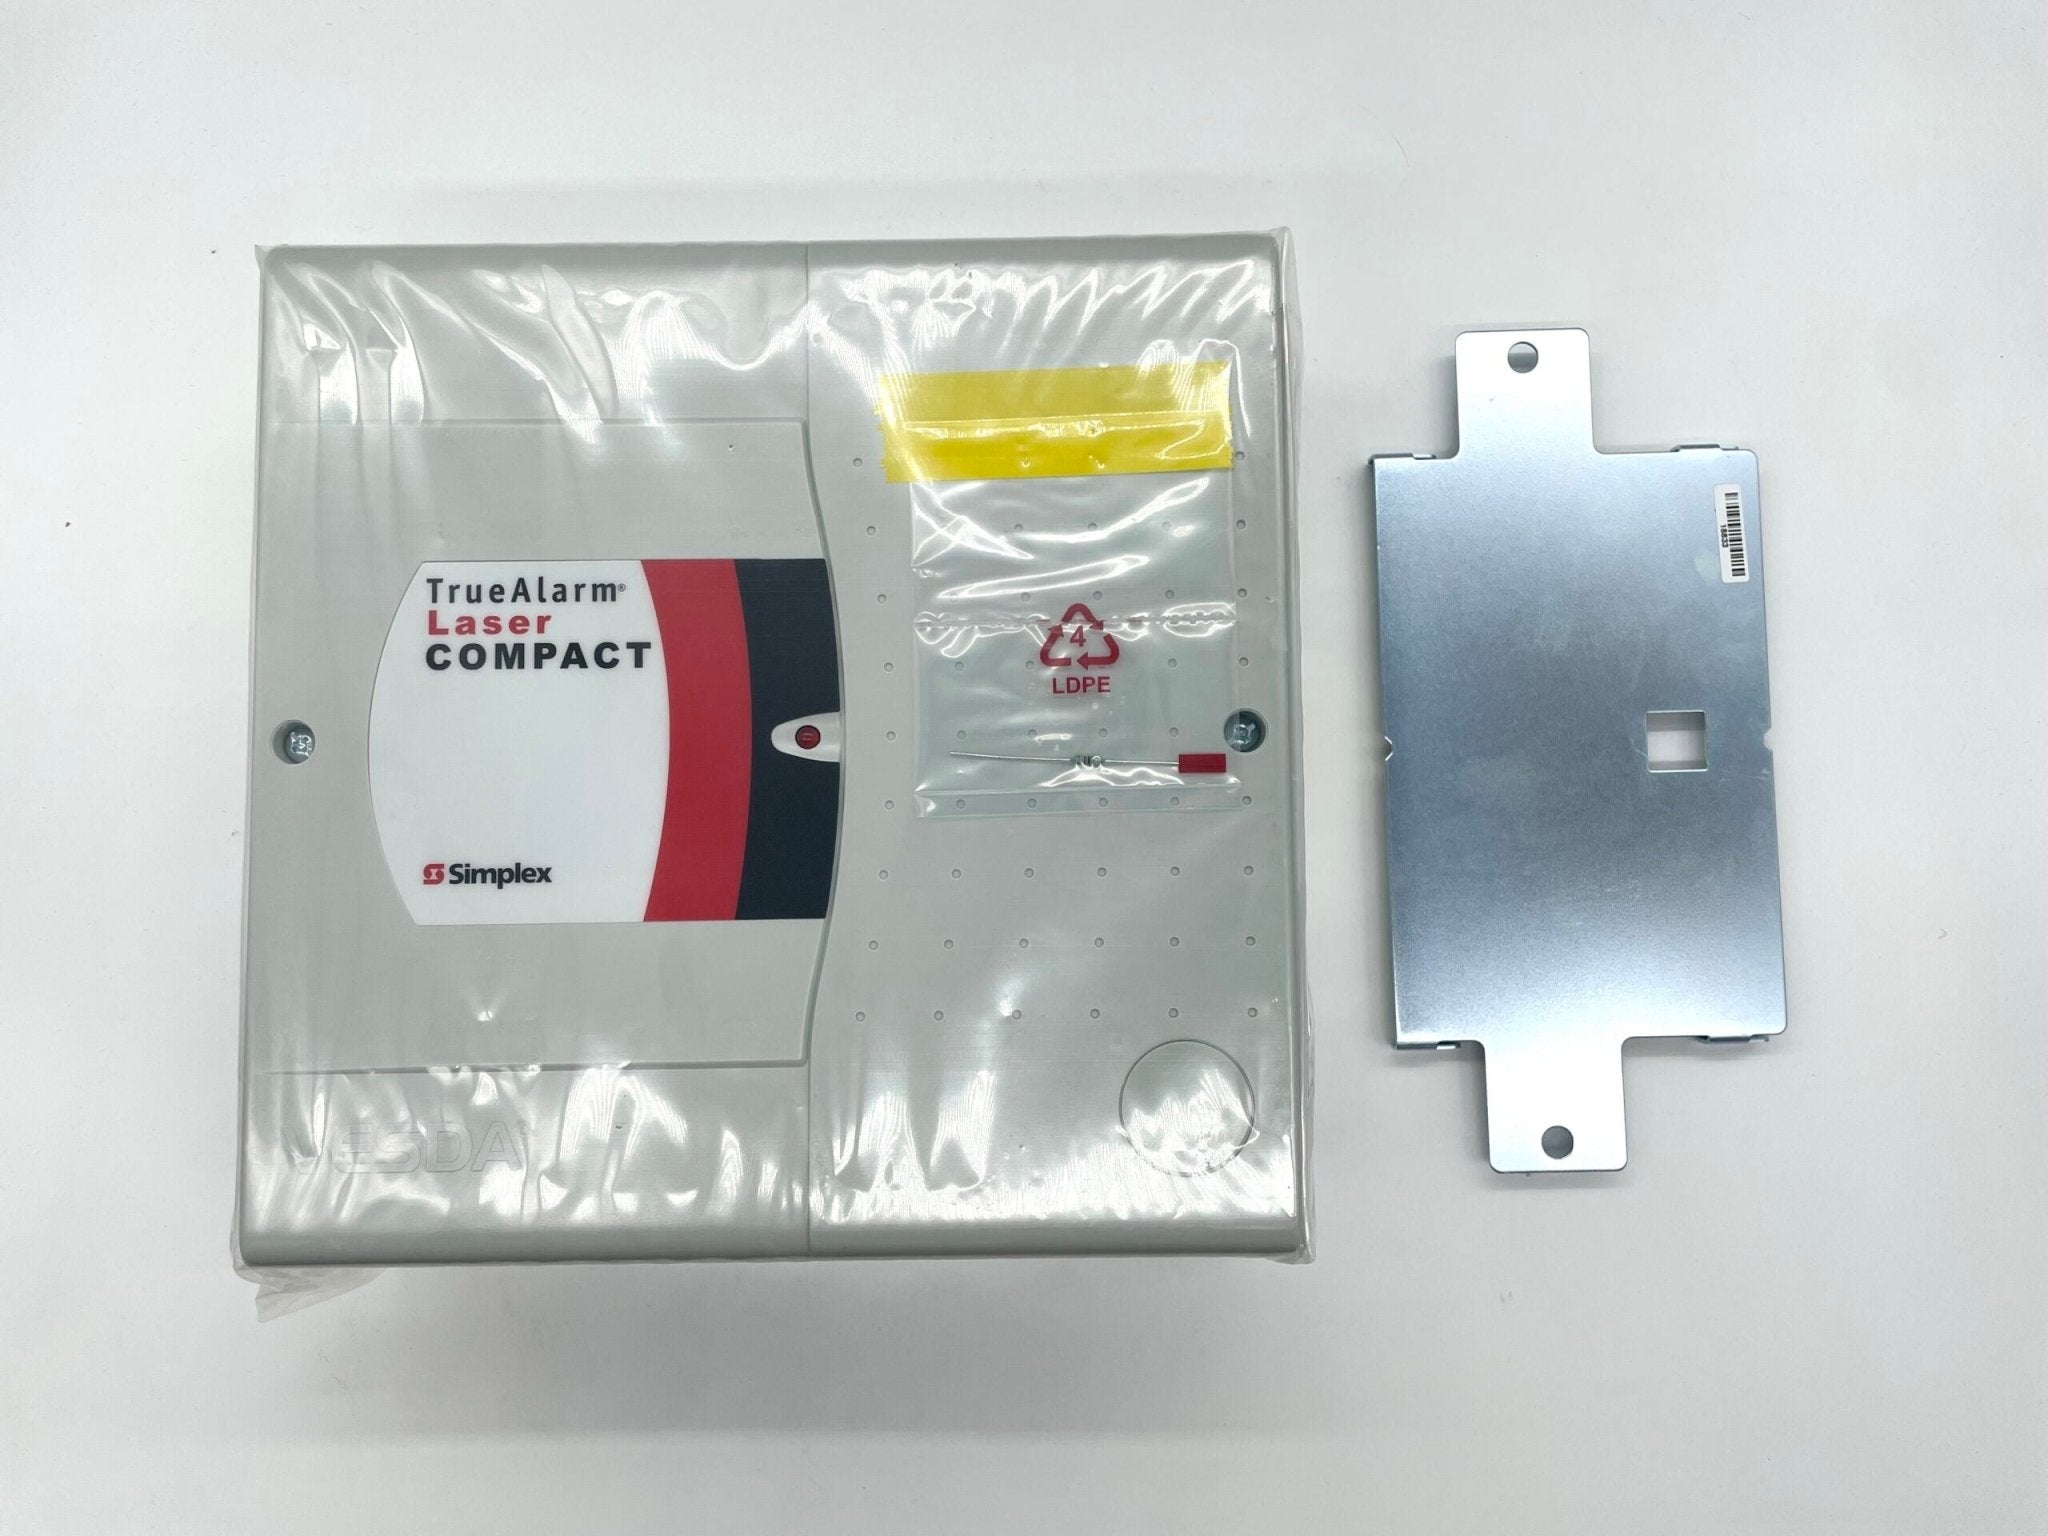 Vesda VLC-600 True Alarm Laser Compact - The Fire Alarm Supplier